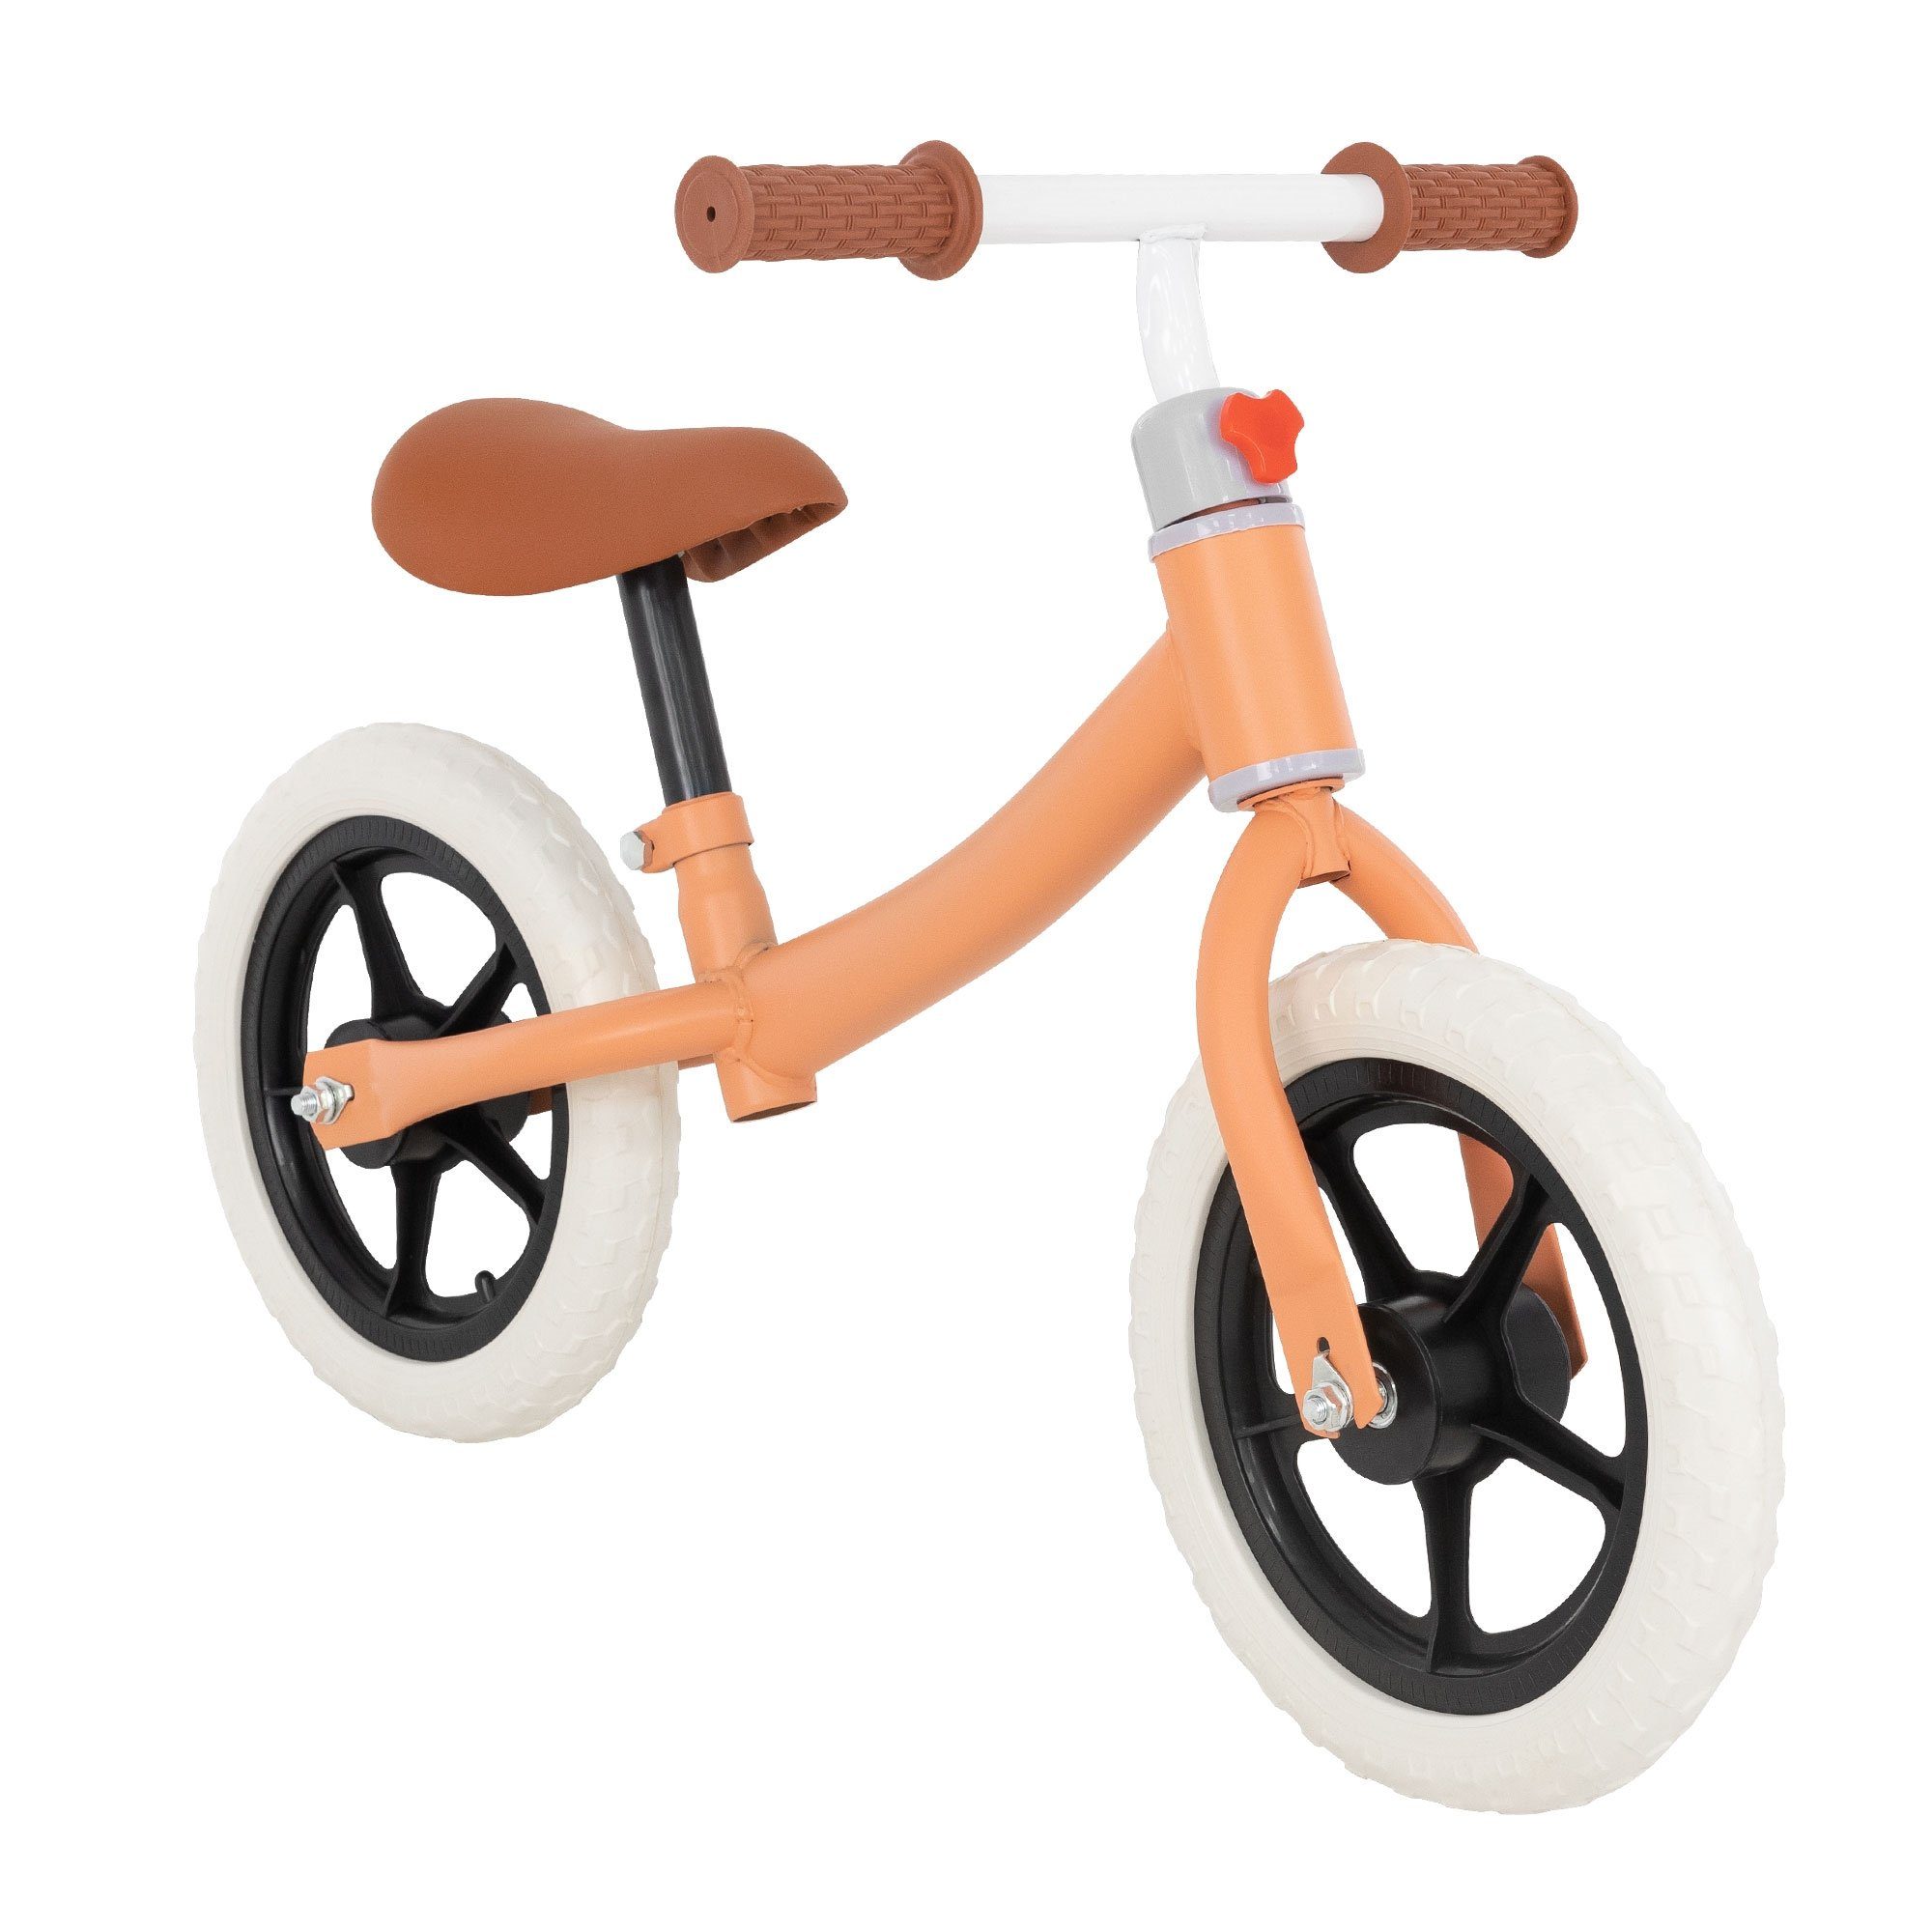 ECD Germany Laufrad Lernlaufrad Kinderlaufrad Kleinkind Balance Bike  Laufräder 11 Zoll, Kinder ab 2 Jahre bis zu 20kg Orange 11 Zoll Räder  verstellbar